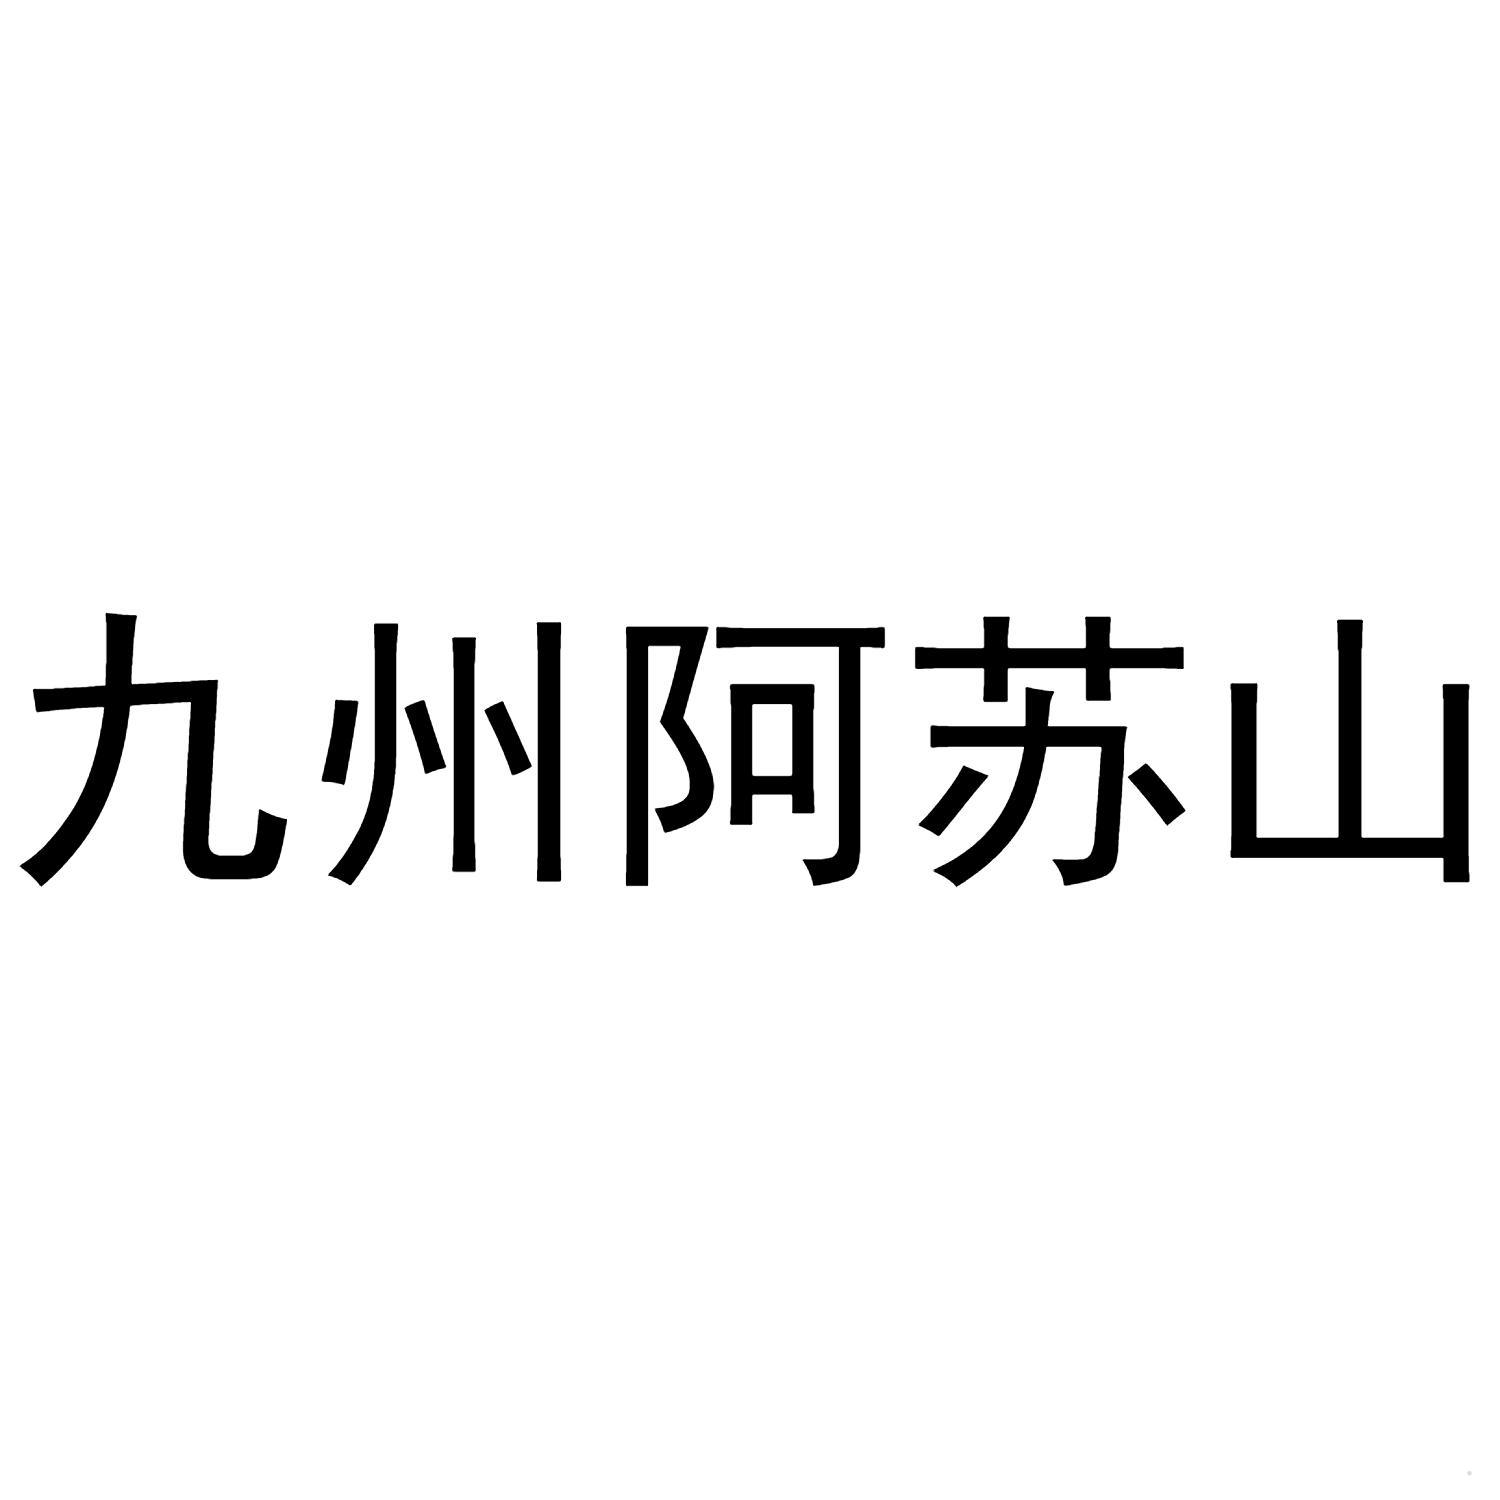 九州阿苏山logo